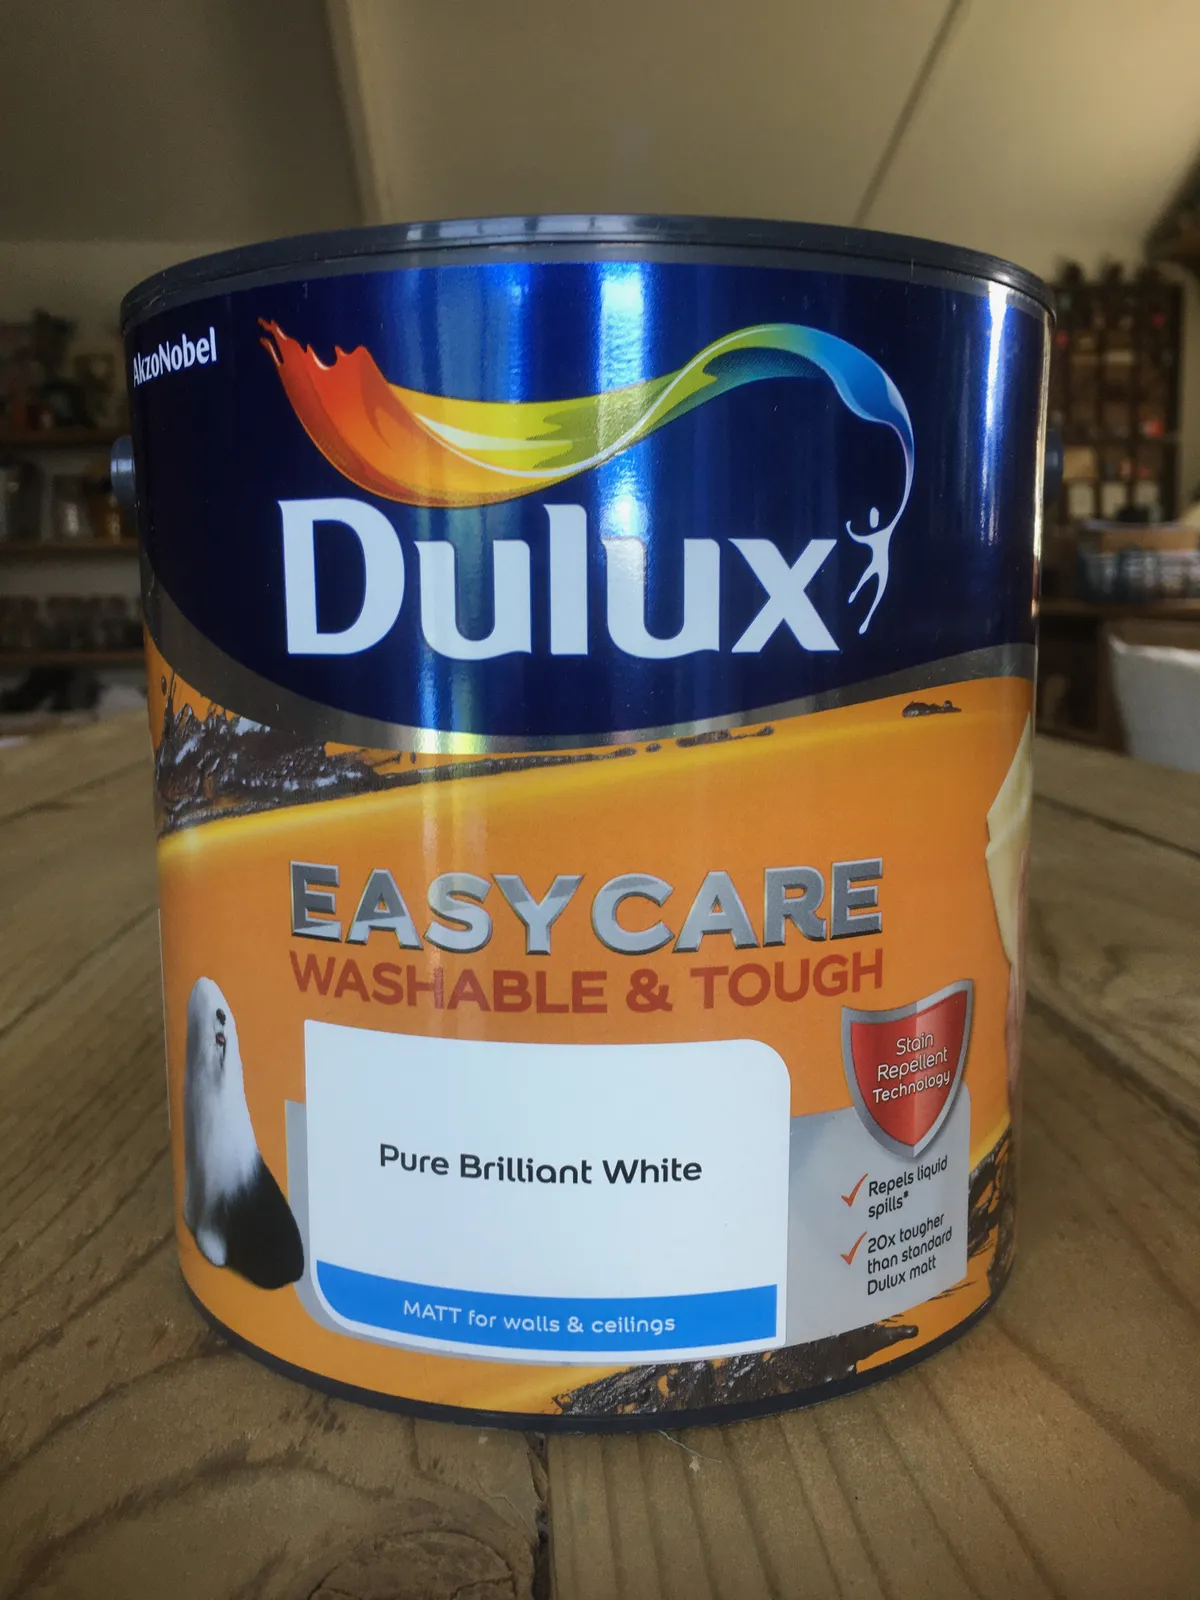 Dulux Easycare washable & tough pure brilliant white matt emulsion